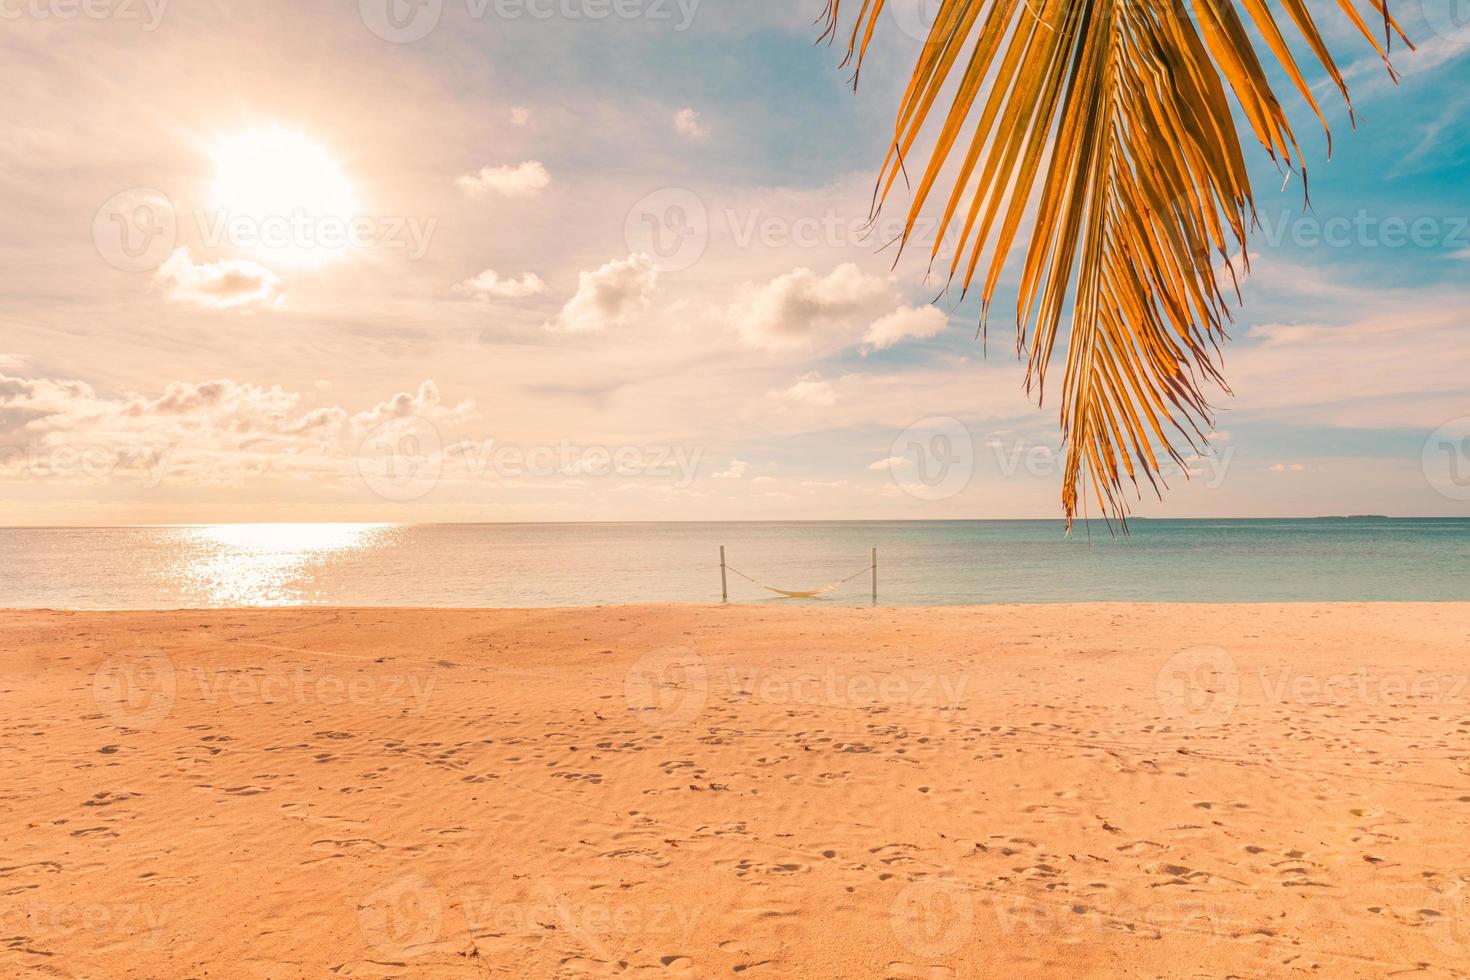 Sonnenuntergang Palmblatt mit buntem Himmel über ruhige Seelandschaft, Küstenblick. tropischer strand szenische, exotische sommerlandschaft. Urlaub, Urlaubskonzept foto